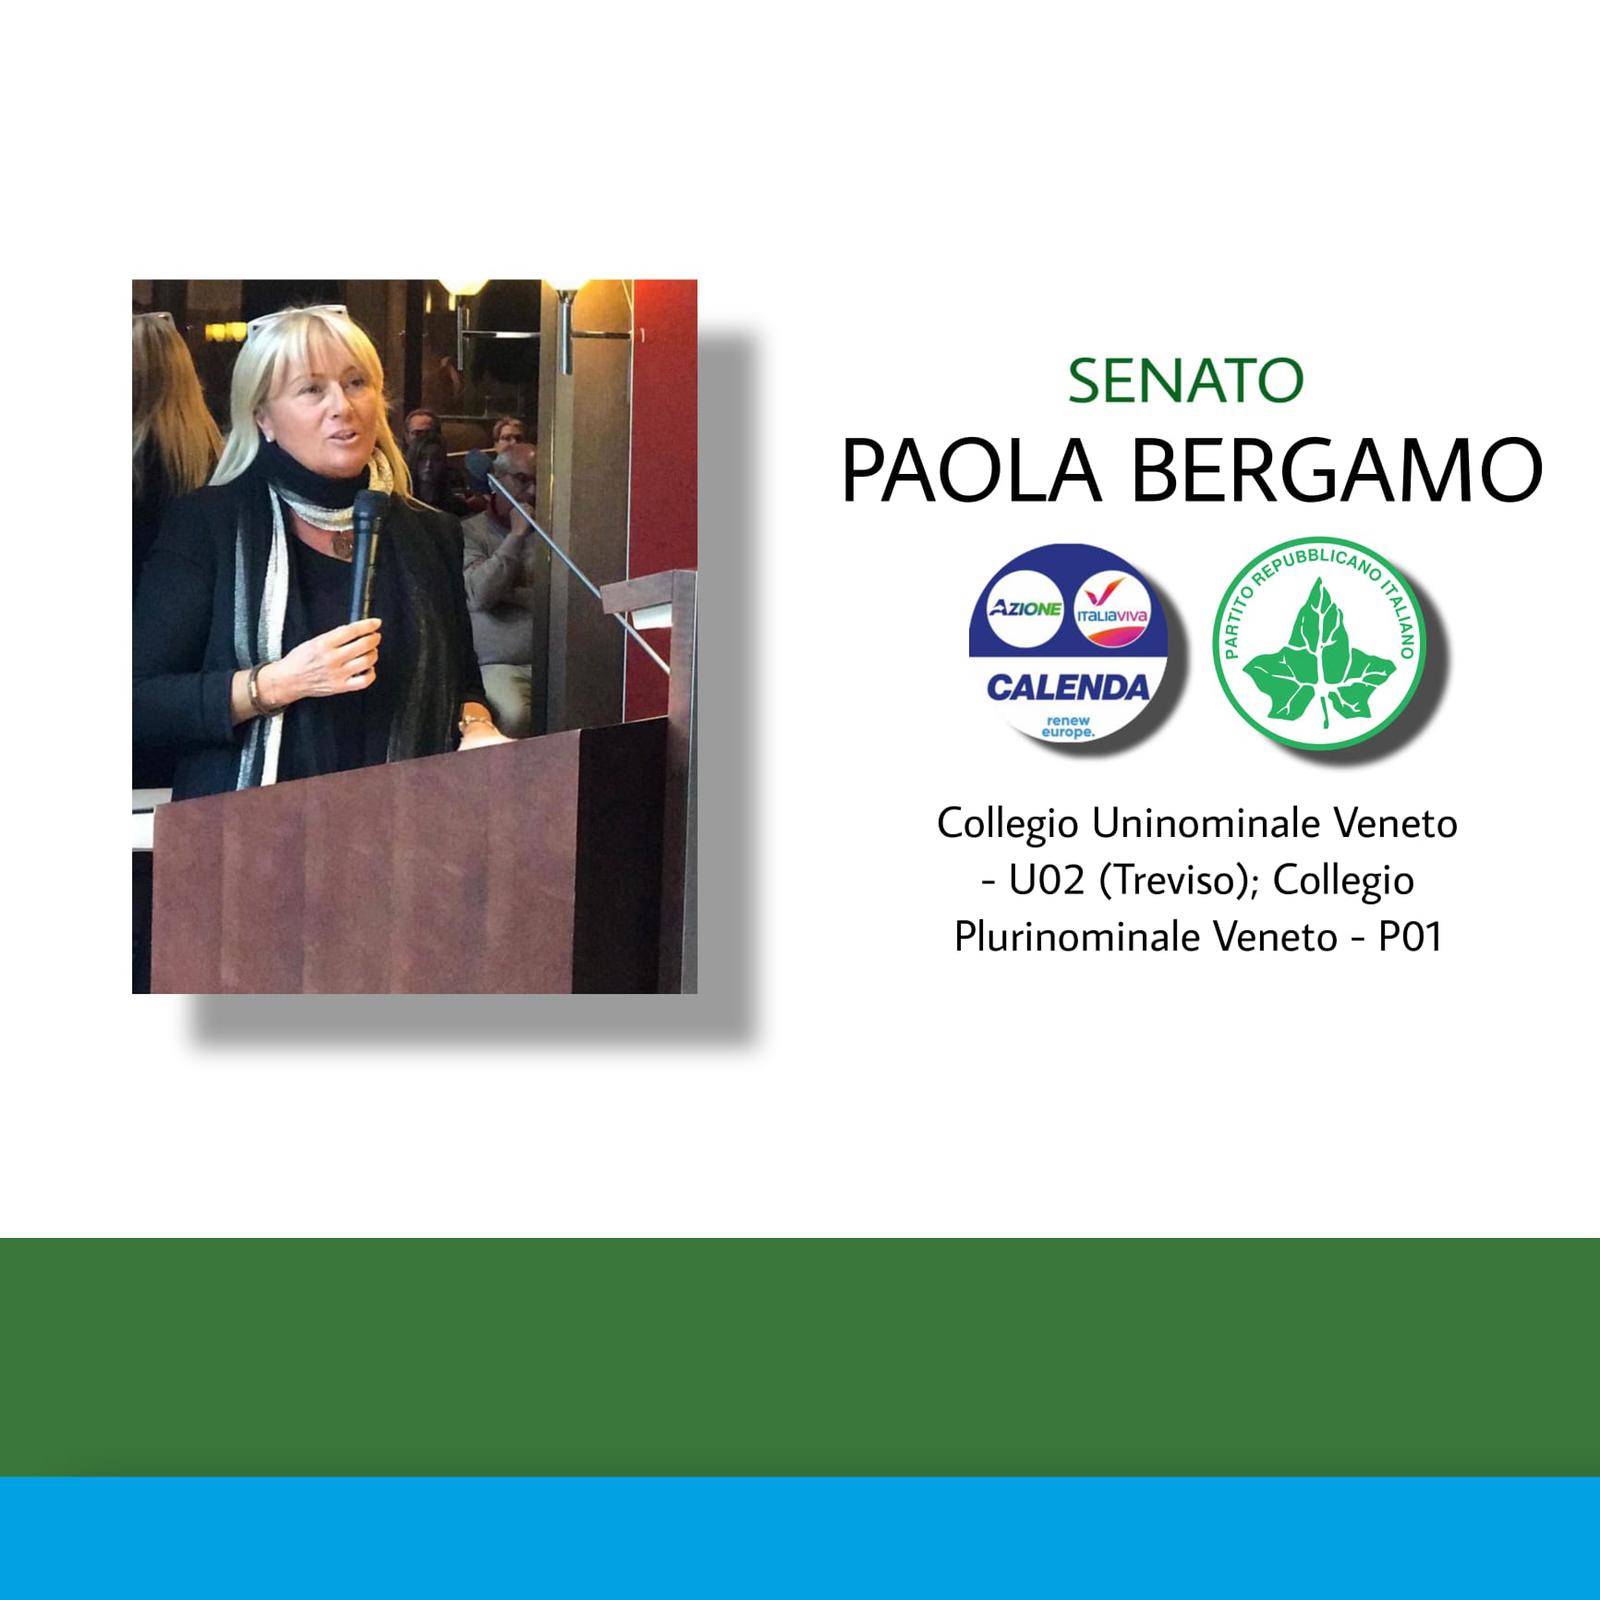 Paola Bergamo candidata al Senato: al nord est